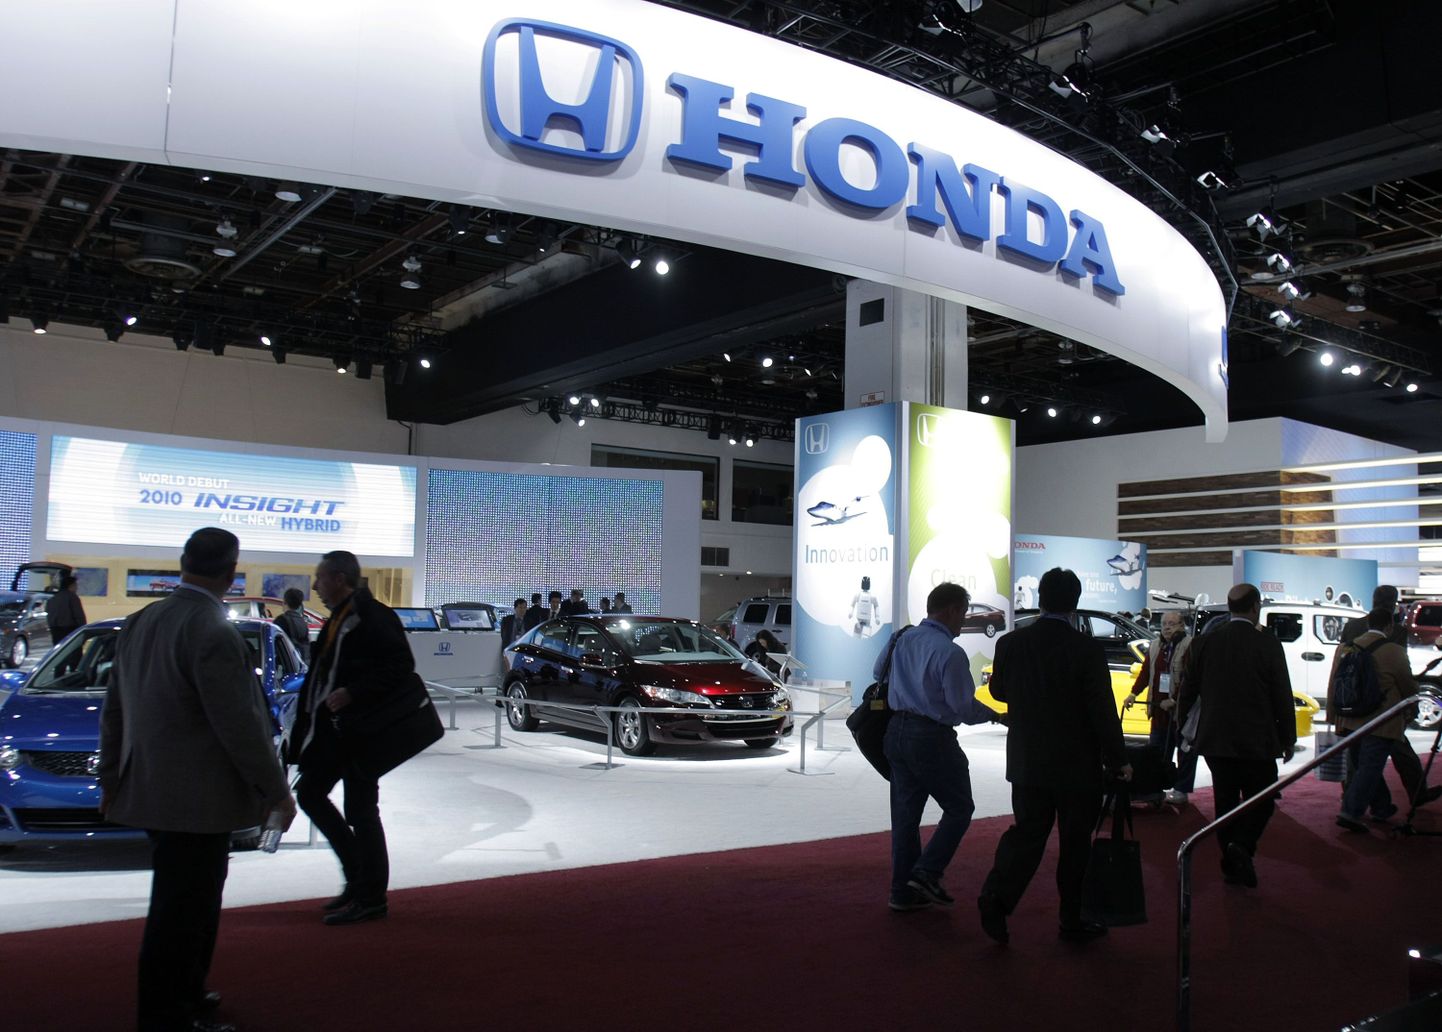 Honda väljapanek Detroidis Cobo Centeris toimunud automessil 12. jaanuaril 2009.